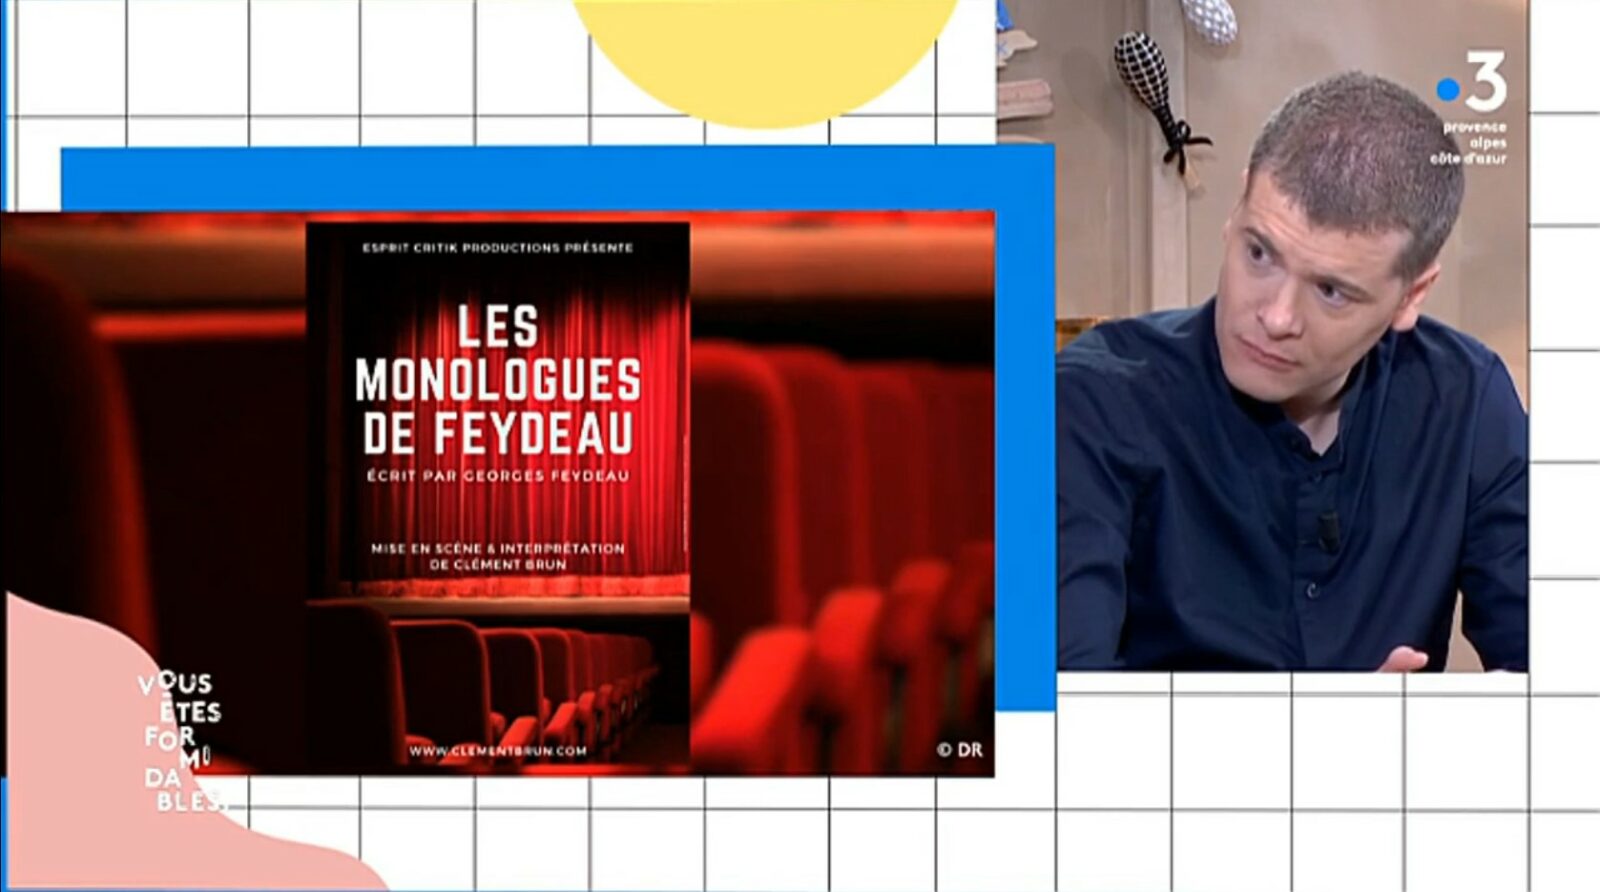 Les Monologues de Feydeau sur France 3